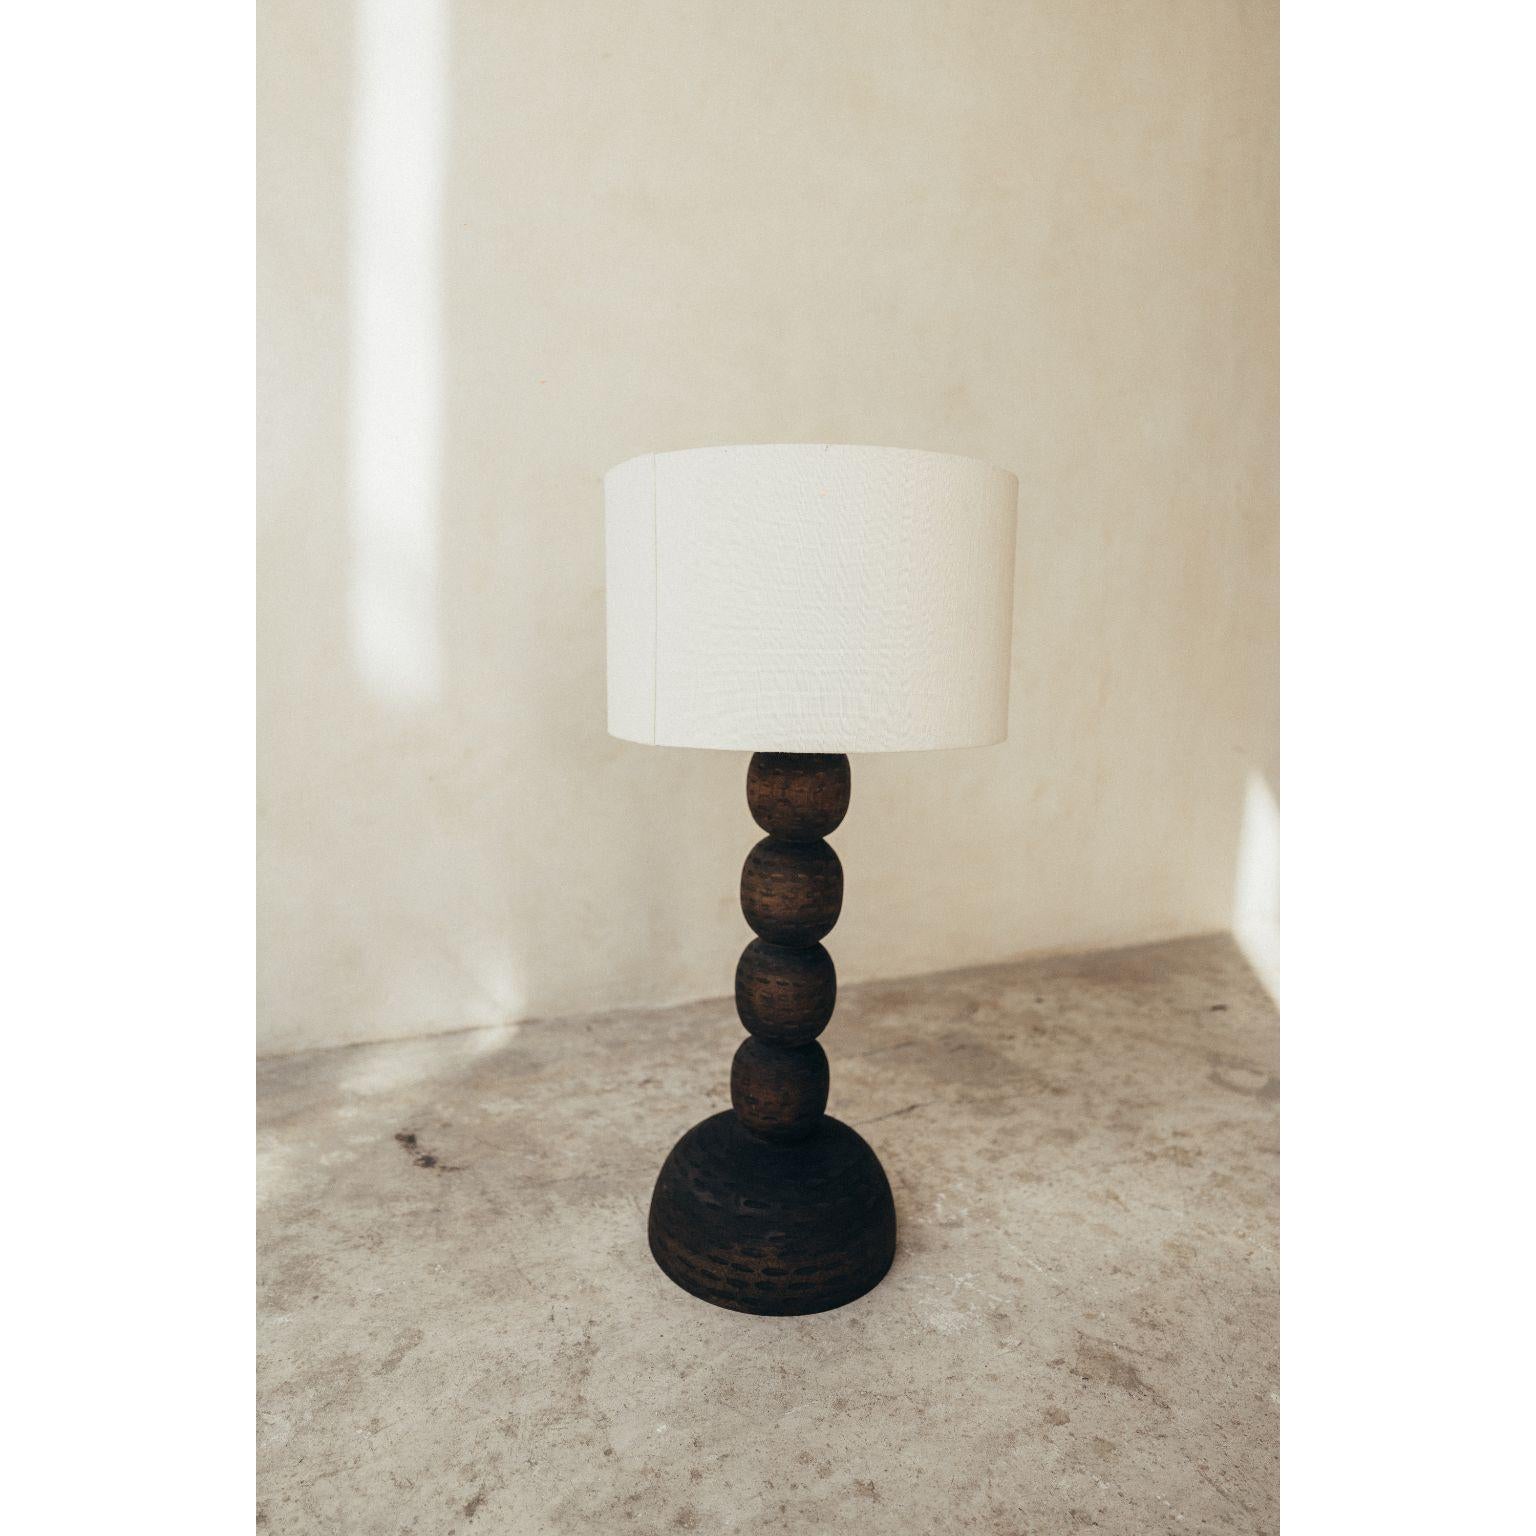 Schreibtischlampe aus Holz im Vintage-Stil mit Leinenschirm von Daniel Orozco.
Abmessungen: D 30 x H 45 cm.
MATERIALIEN: Holz, Leinen.

Alle unsere Lampen können je nach Land verkabelt werden. Wenn es in die USA verkauft wird, wird es zum